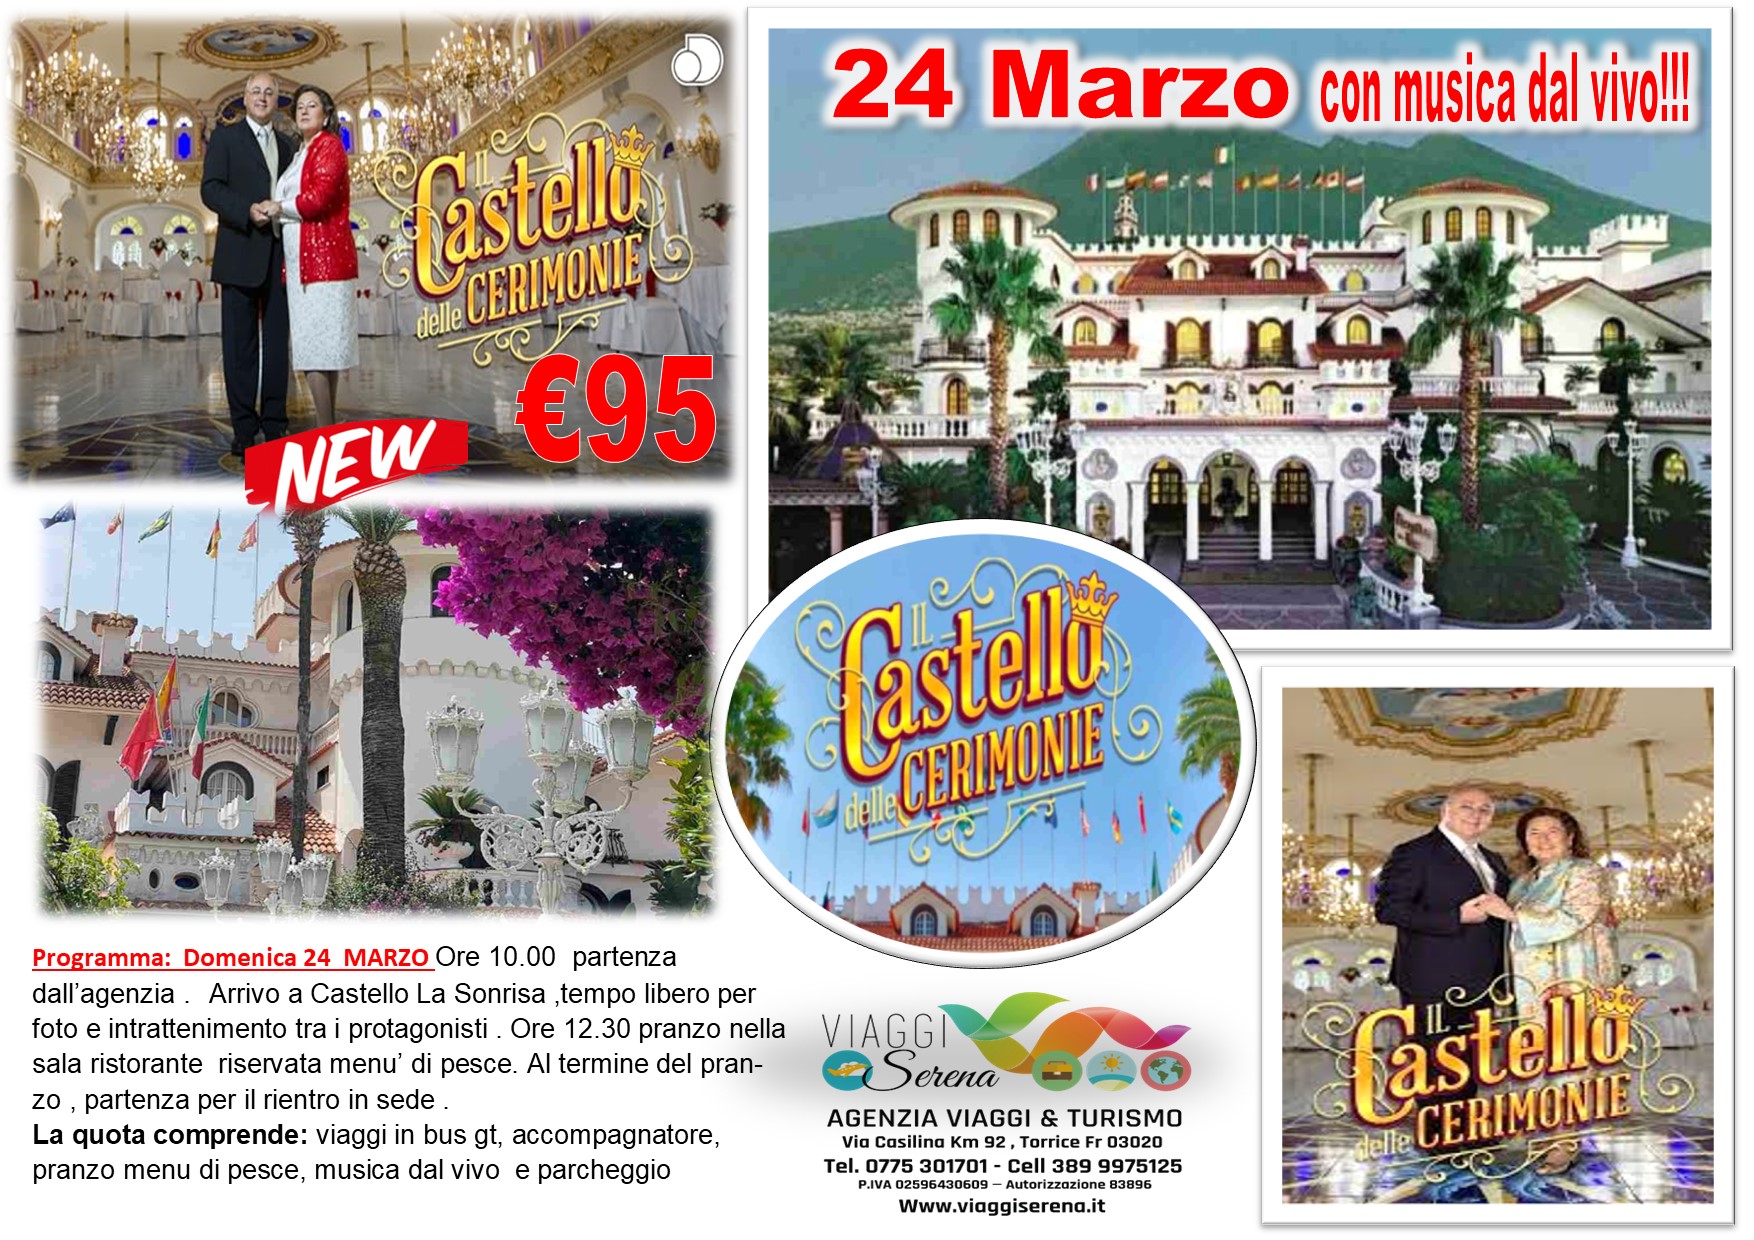 Viaggi di gruppo: Castello delle Cerimonie “La Sonrisa” 24 Marzo € 95,00